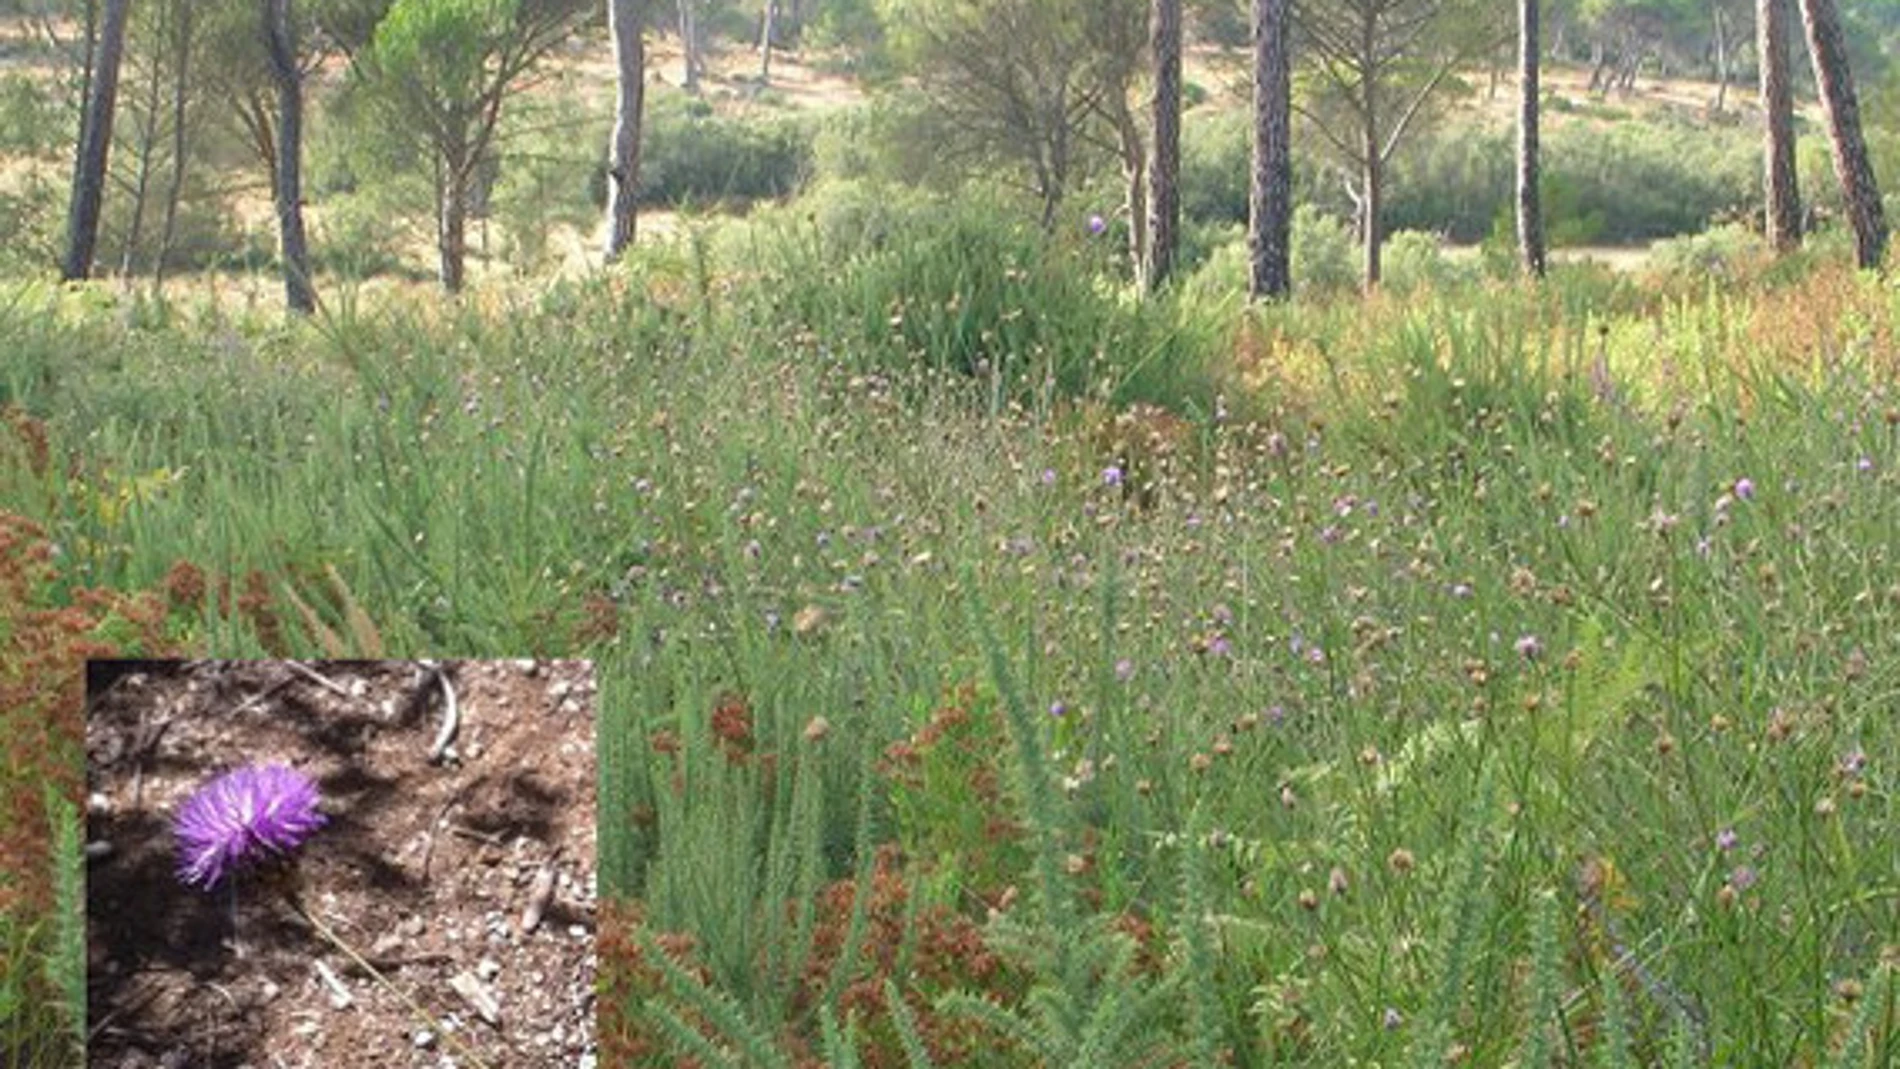 Pradera de Cheirolophus uliginosus, junto con otras especies, en el Parque Nacional de Doñana. Abajo a la izquierda, detalle de la flor de Cheirolophus uliginosus